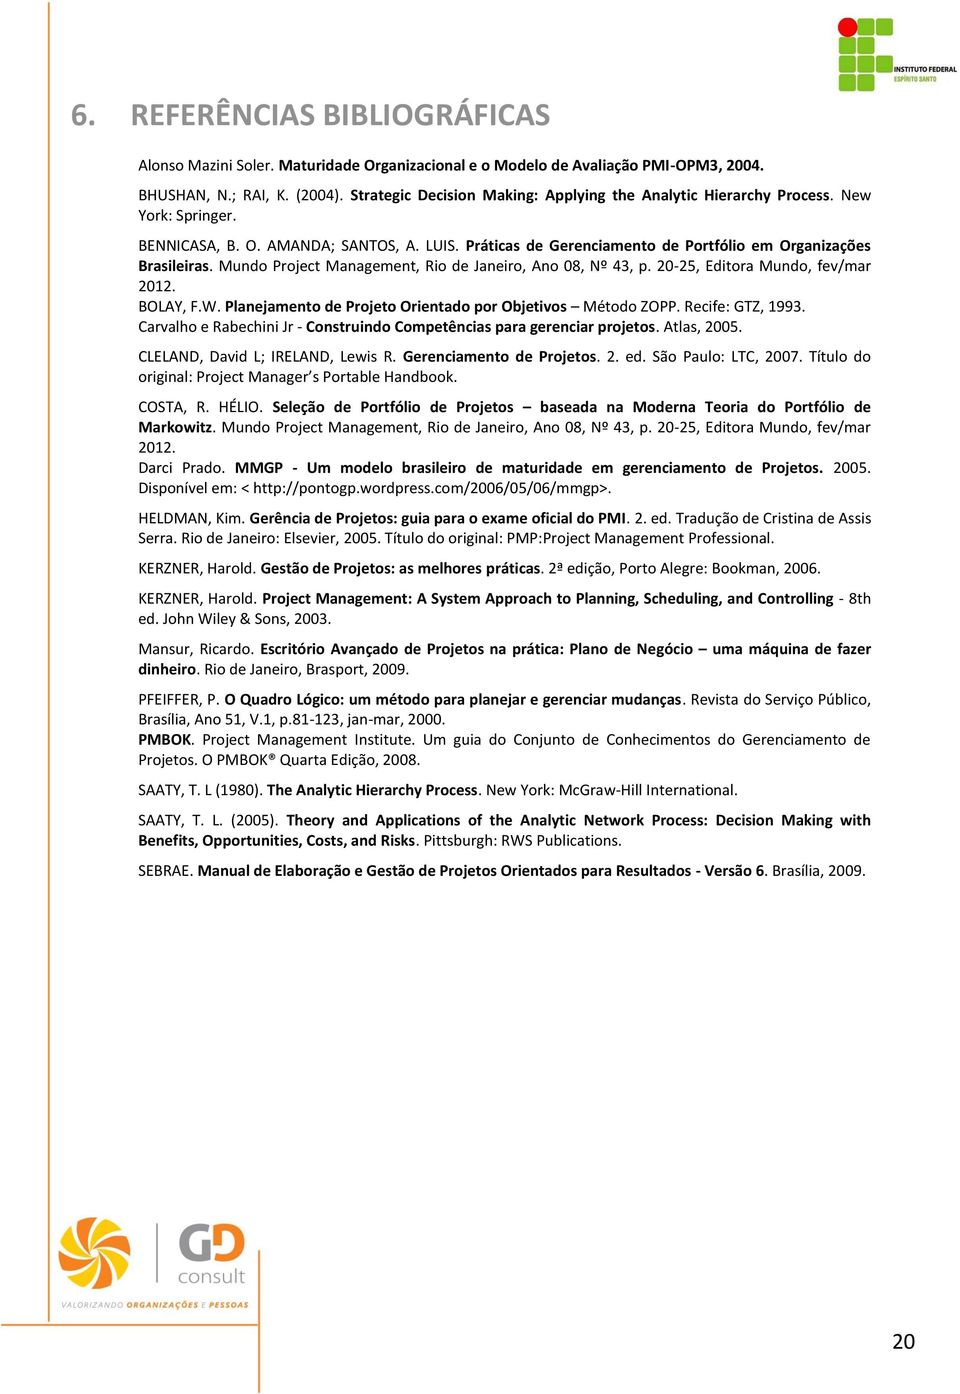 Mundo Project Management, Rio de Janeiro, Ano 08, Nº 43, p. 20-25, Editora Mundo, fev/mar 2012. BOLAY, F.W. Planejamento de Projeto Orientado por Objetivos Método ZOPP. Recife: GTZ, 1993.